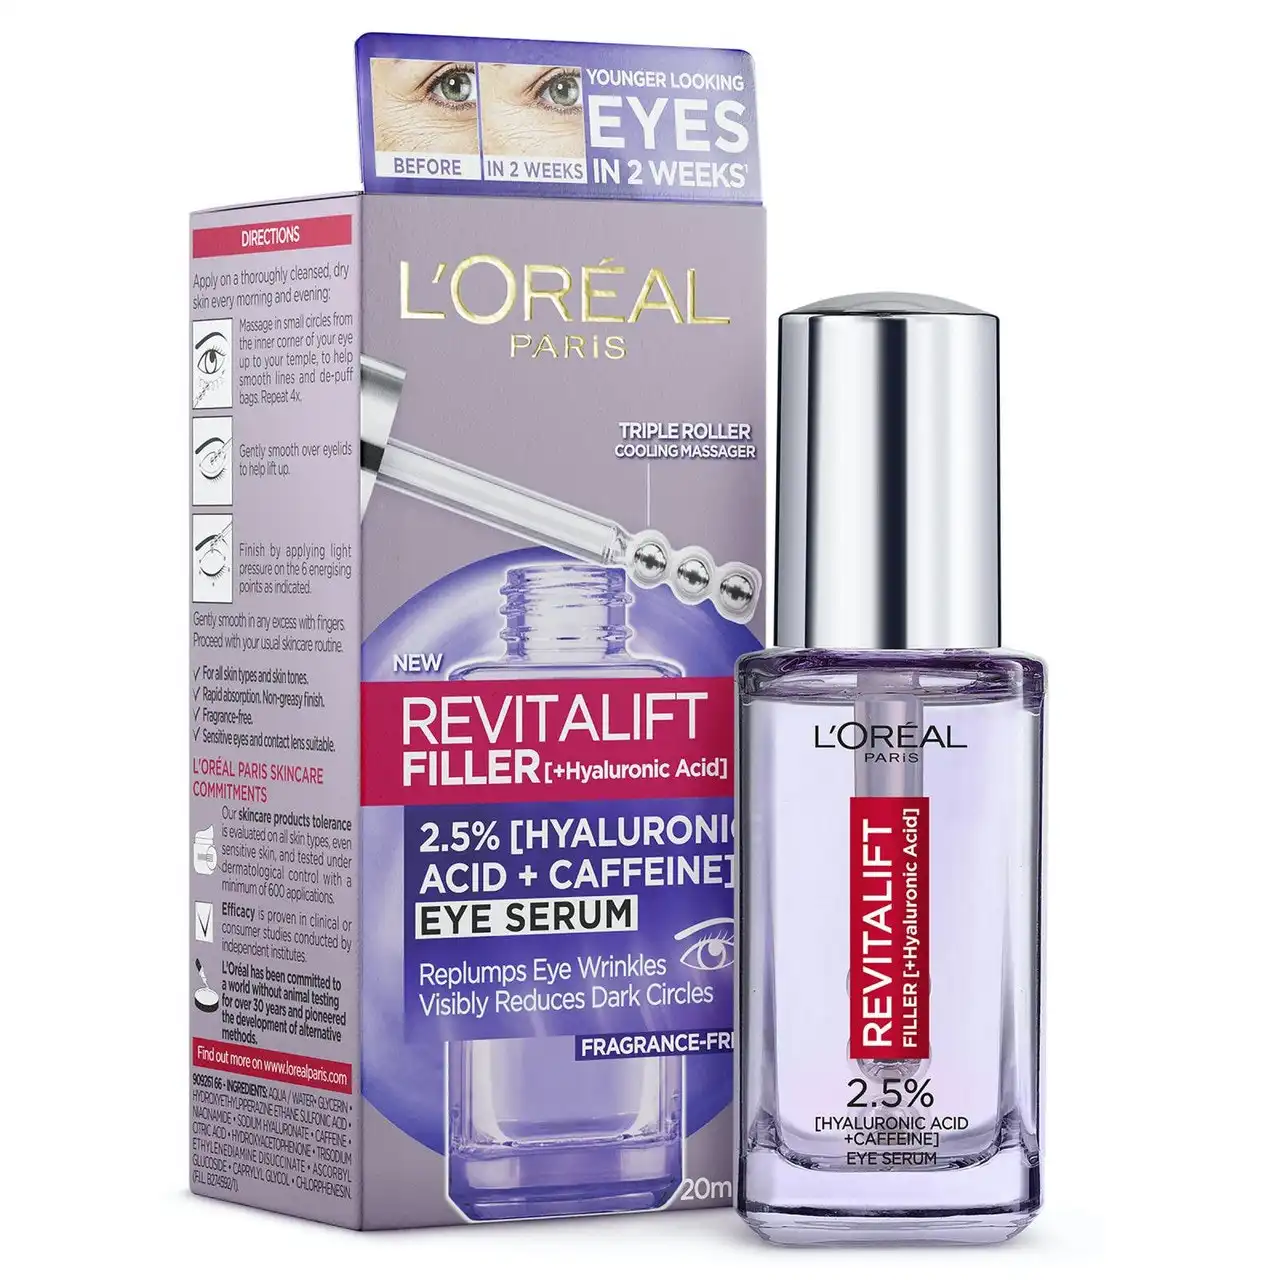 L'Oreal Paris Revitalift Filler Hyaluronic Acid Eye Serum 20ml